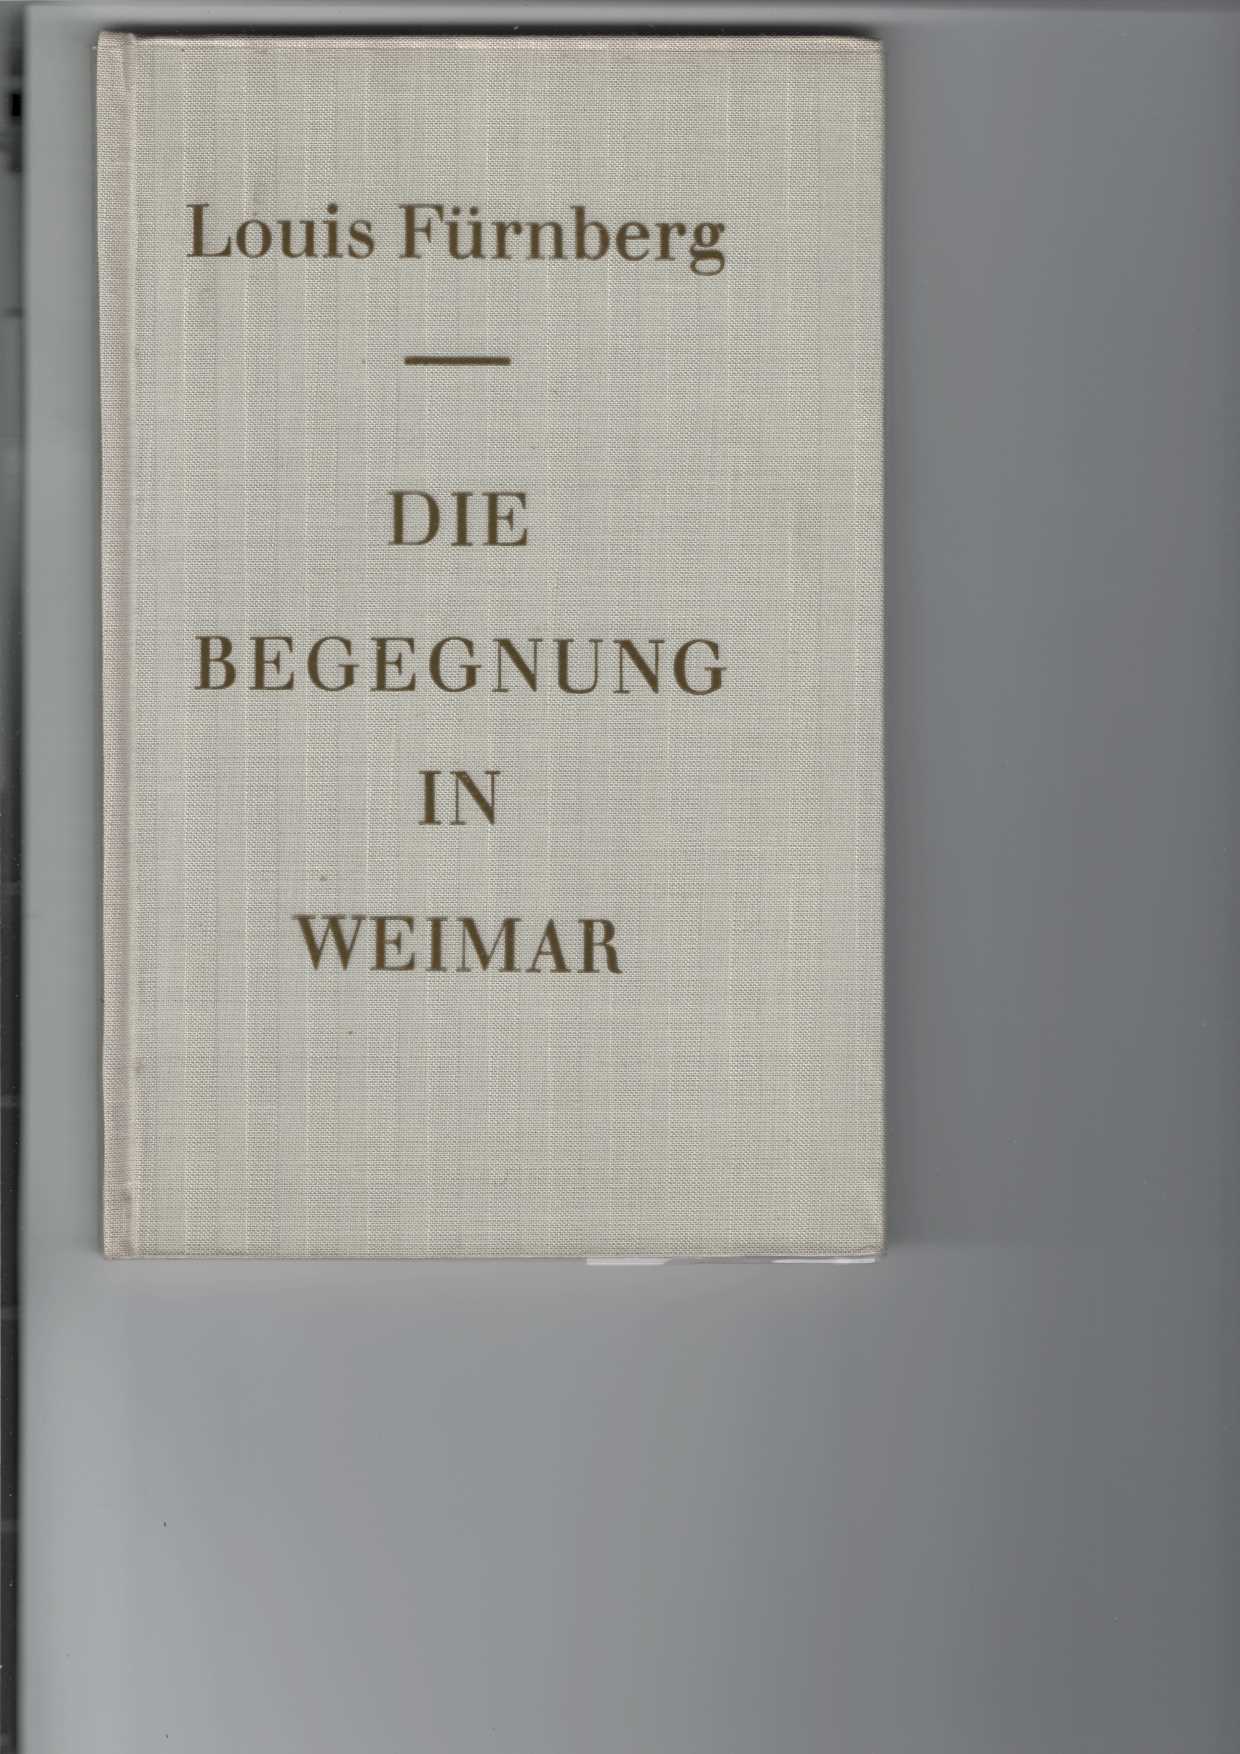 Die Begegnung in Weimar.